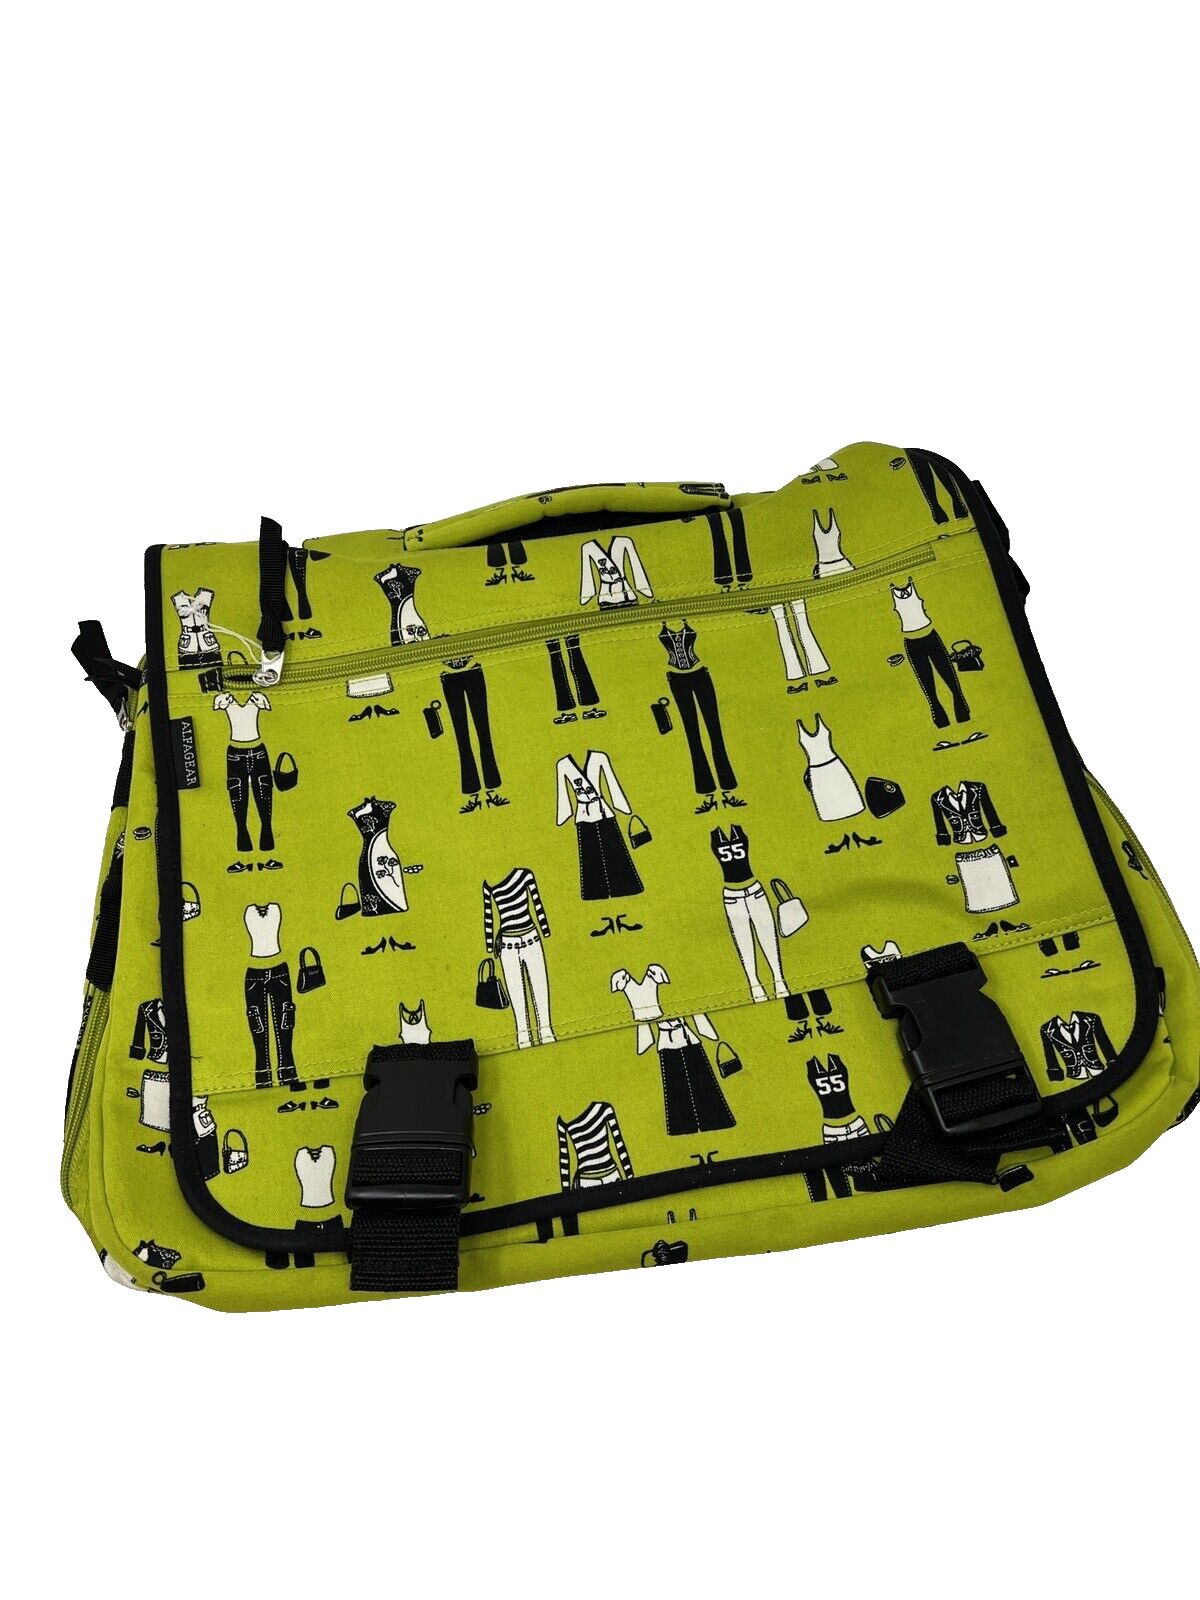 Alphagear Messenger Laptop Bag Novelty Fashion Print Green